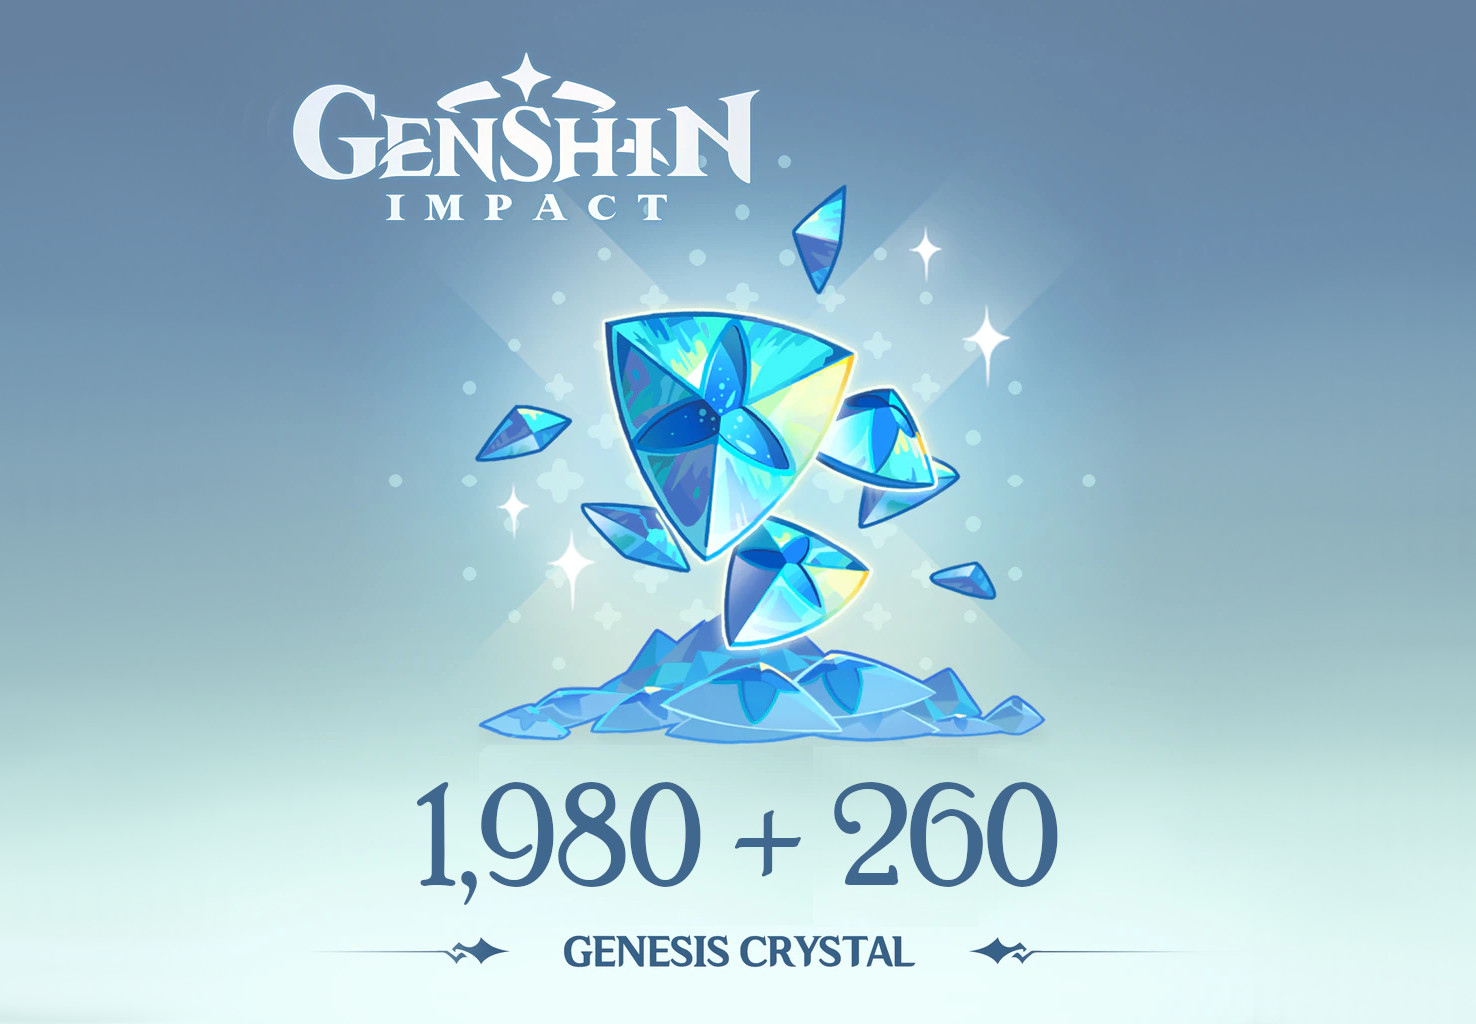 Genshin Impact - 1,980 + 260 Genesis Crystals Reidos Voucher, 33.9$